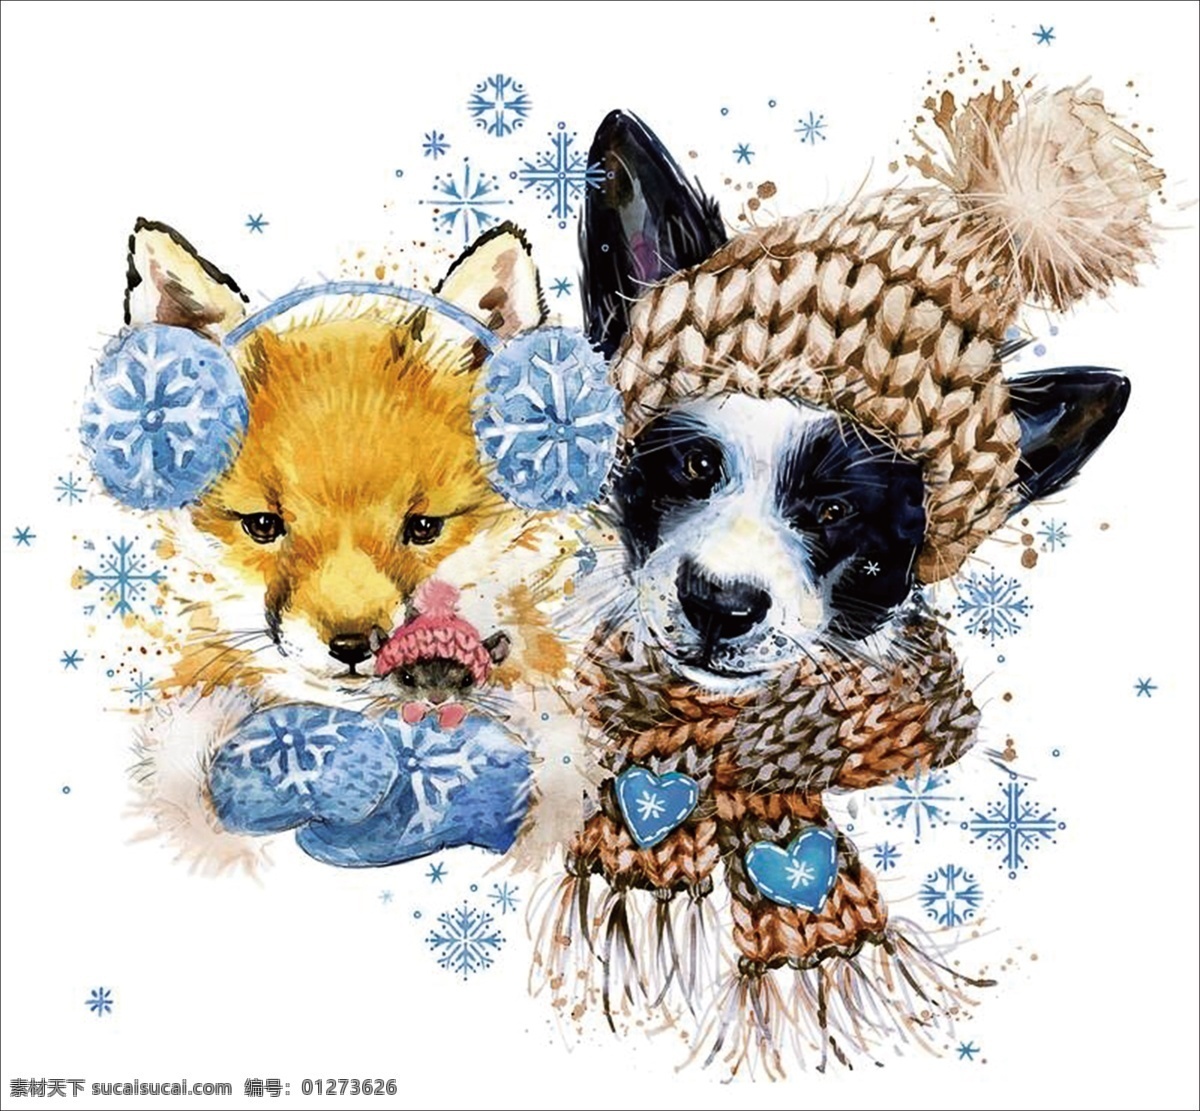 狗 狐狸 手绘 围巾 毛球 雪 耳机 雪花 水彩 彩绘 插画 文化艺术 绘画书法